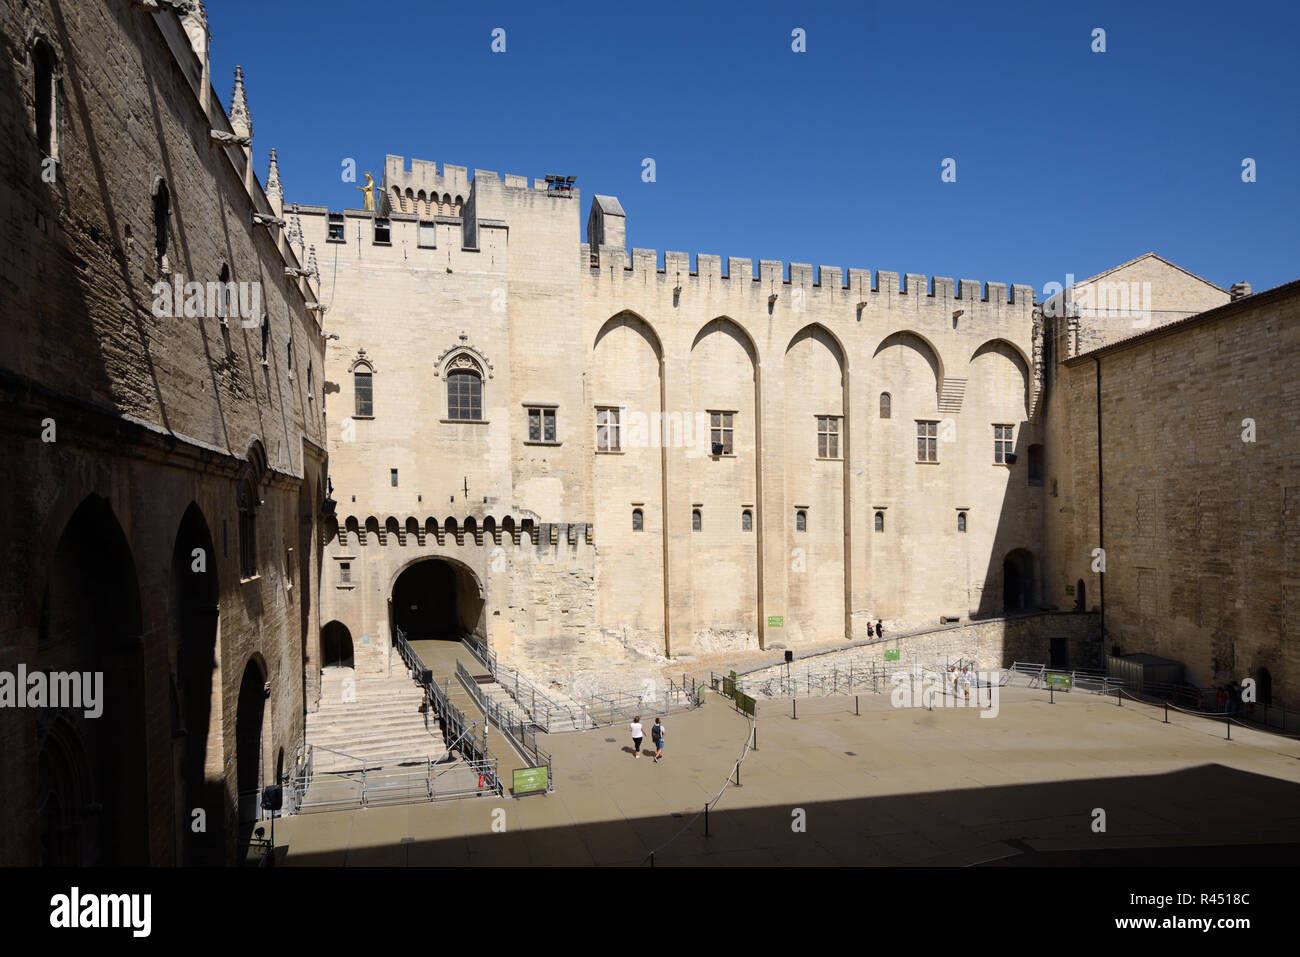 Cour intérieure ou cours d'Honneur Palais des Papes, le Palais des Papes ou Palais des Papes Avignon Provence France Banque D'Images